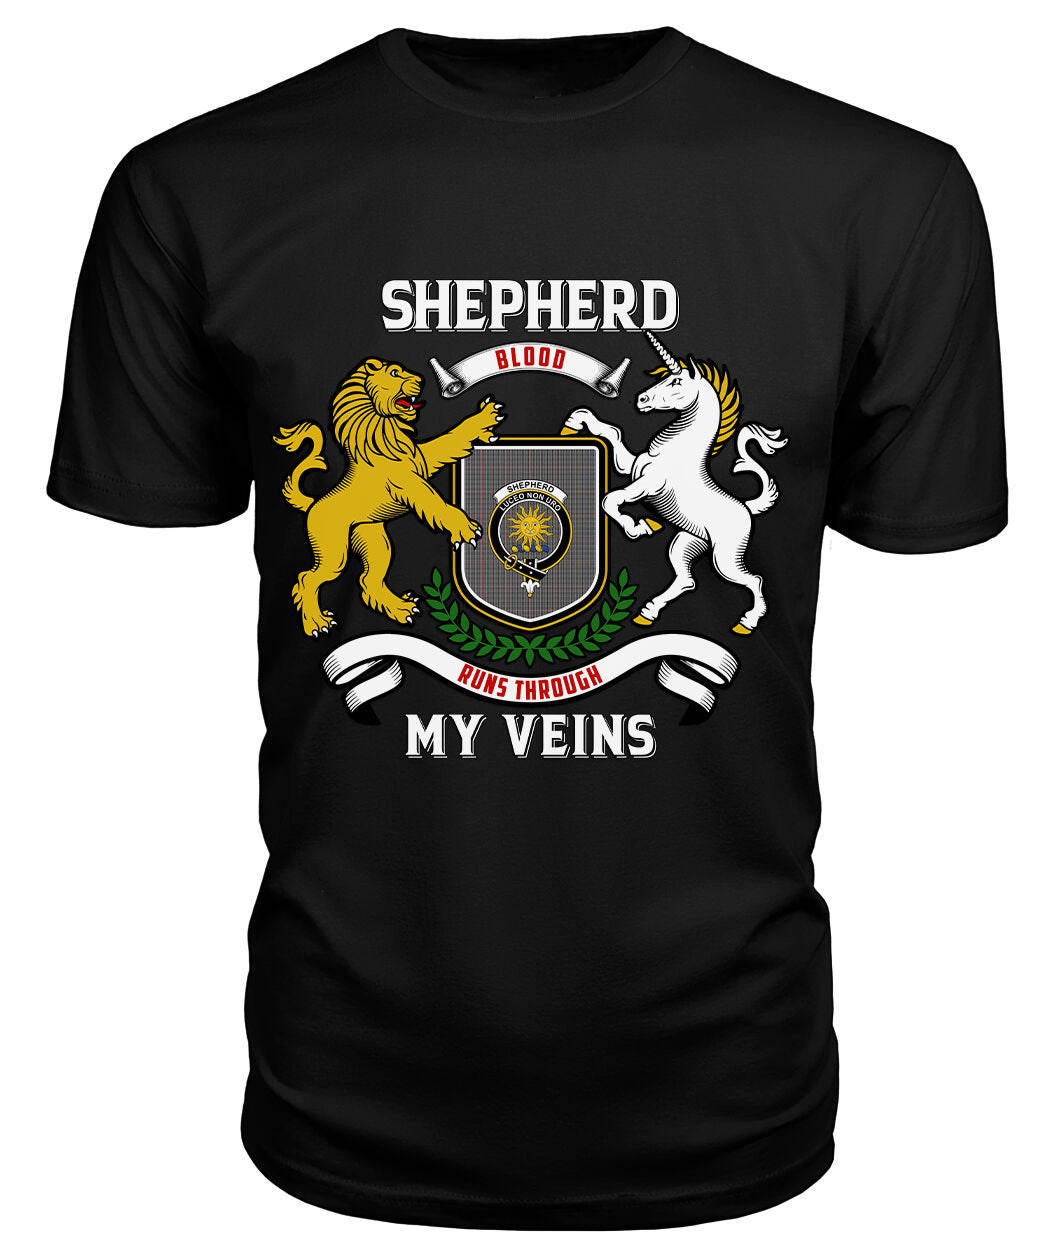 Shepherd Tartan Crest 2D T-shirt - Blood Runs Through My Veins Style